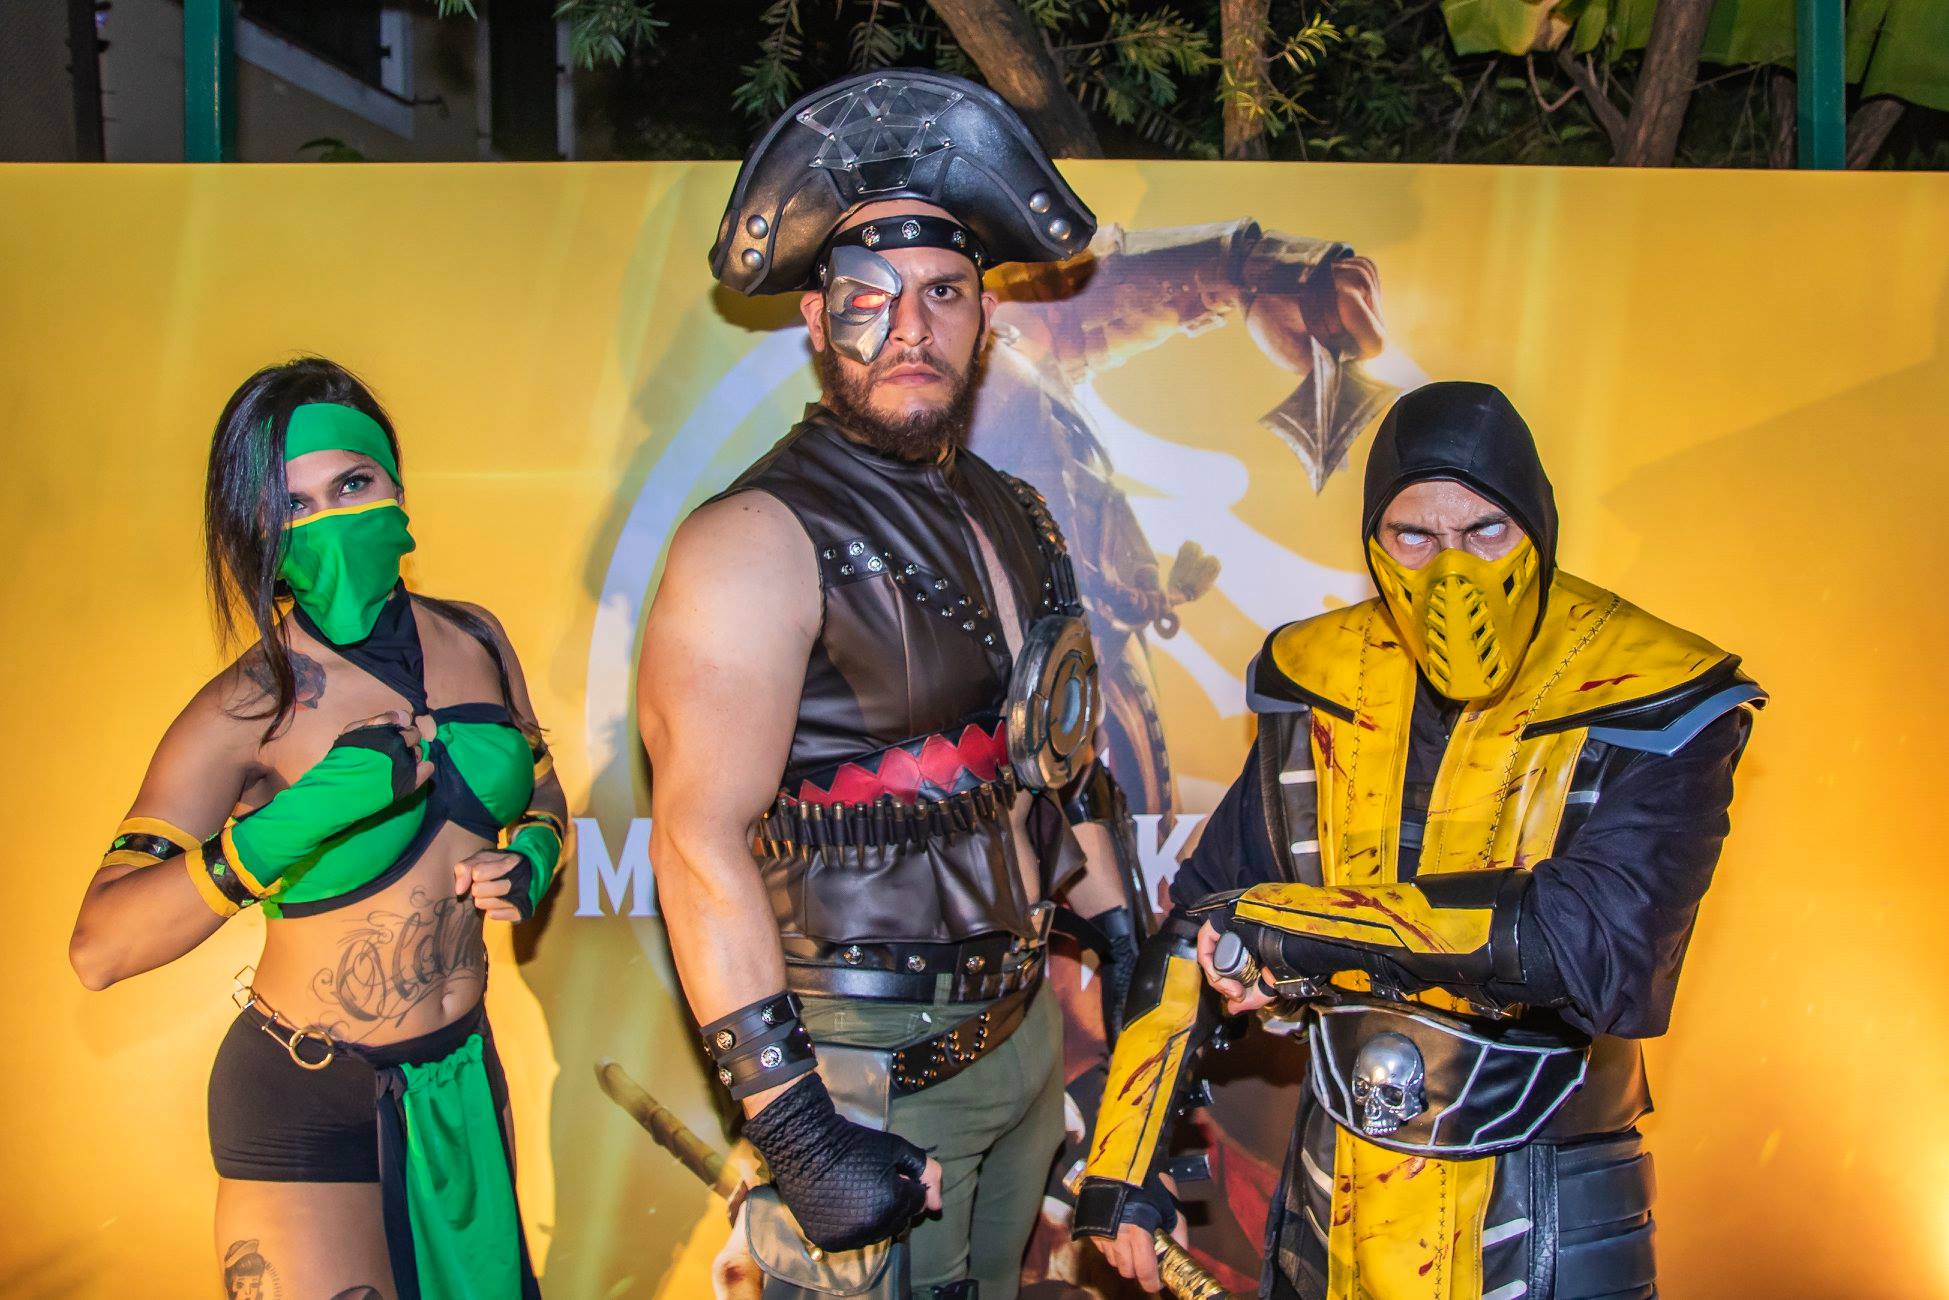 Arquivo Mortal Kombat - MORTAL KOMBAT 11 ULTIMATE É ELEITO O JOGO DE LUTA  DO ANO NA BRAZIL GAME AWARDS 2020 A Brazil Game Awards (BGA) revelou hoje a  lista de jogos